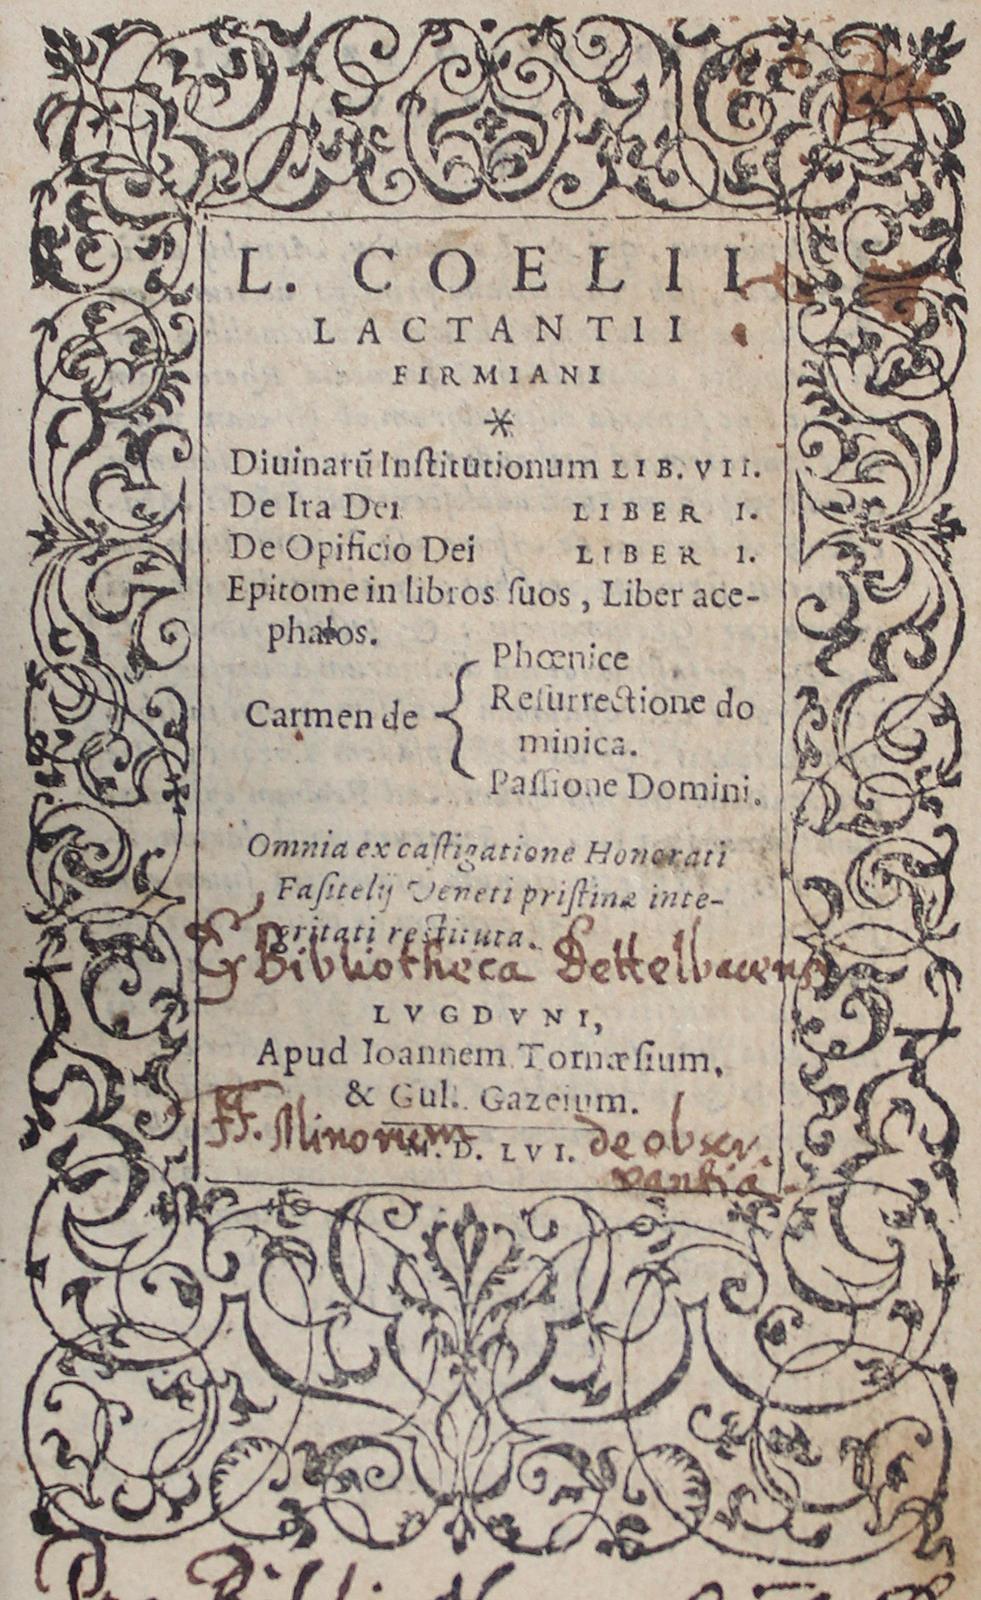 Lactantius,L.C.F.